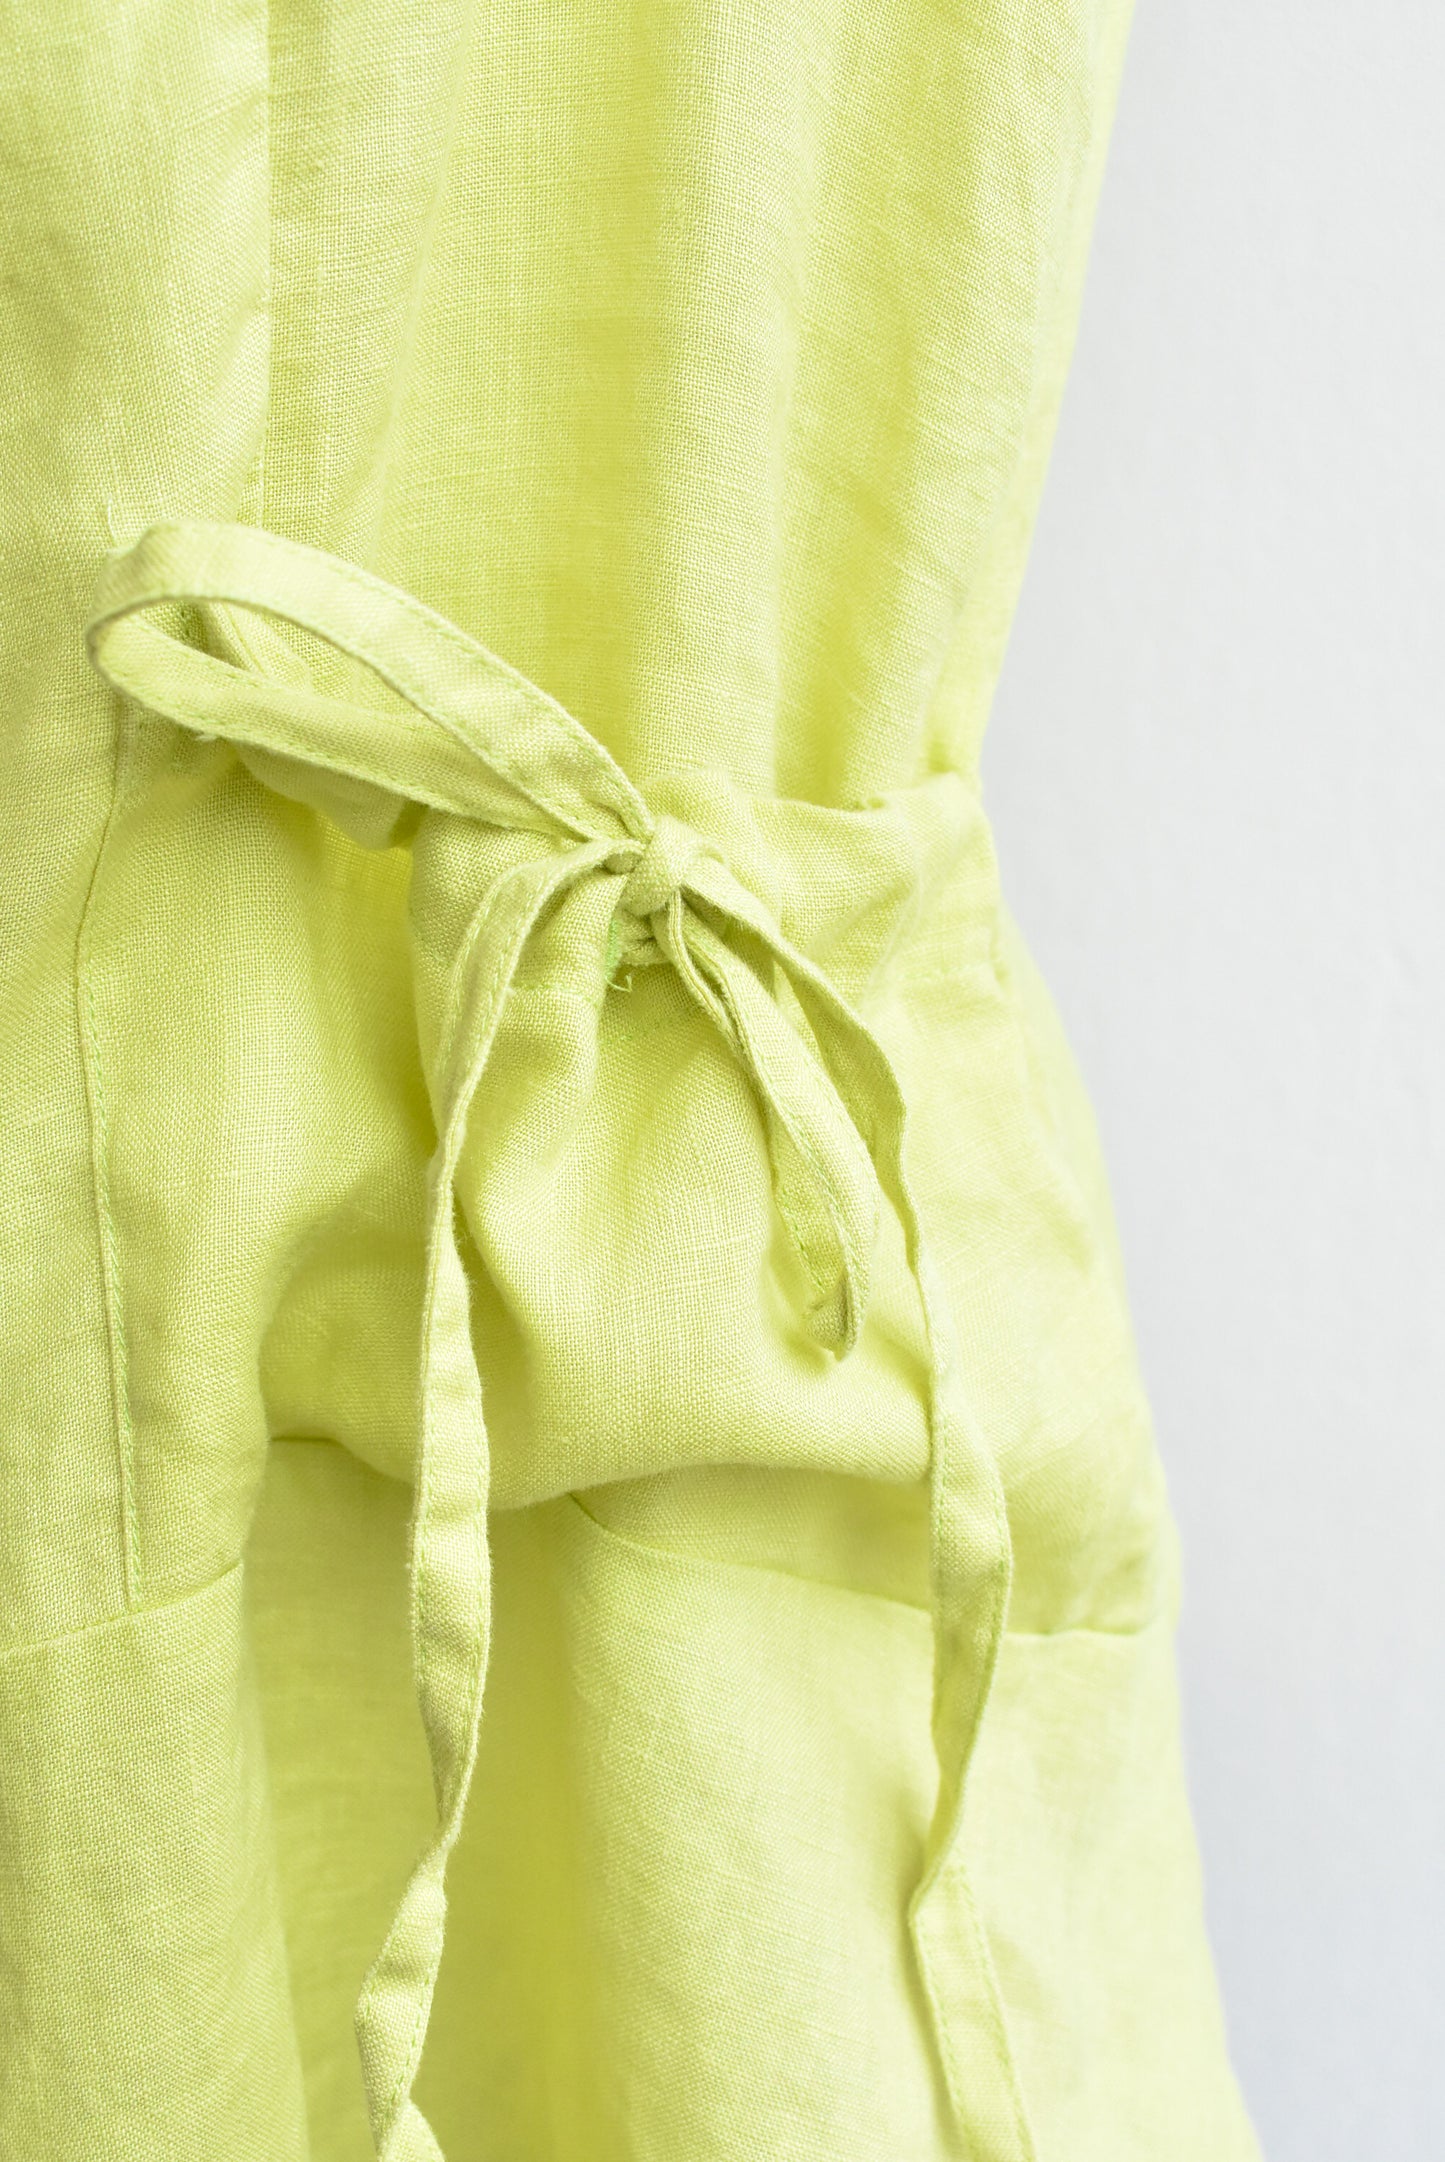 Lime green linen vest, size M